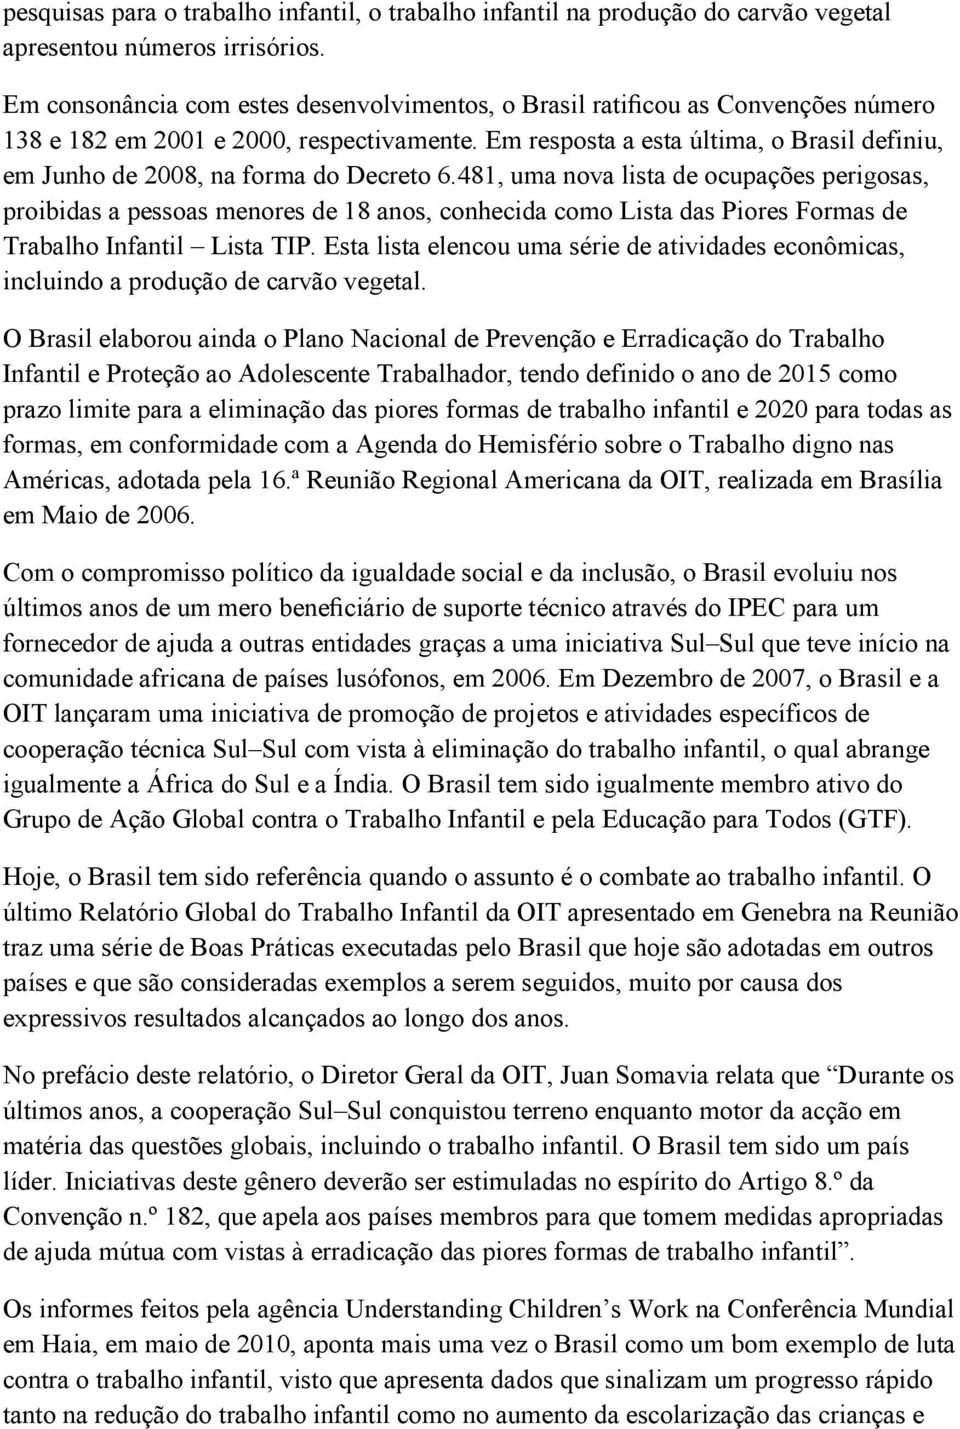 Em resposta a esta última, o Brasil definiu, em Junho de 2008, na forma do Decreto 6.